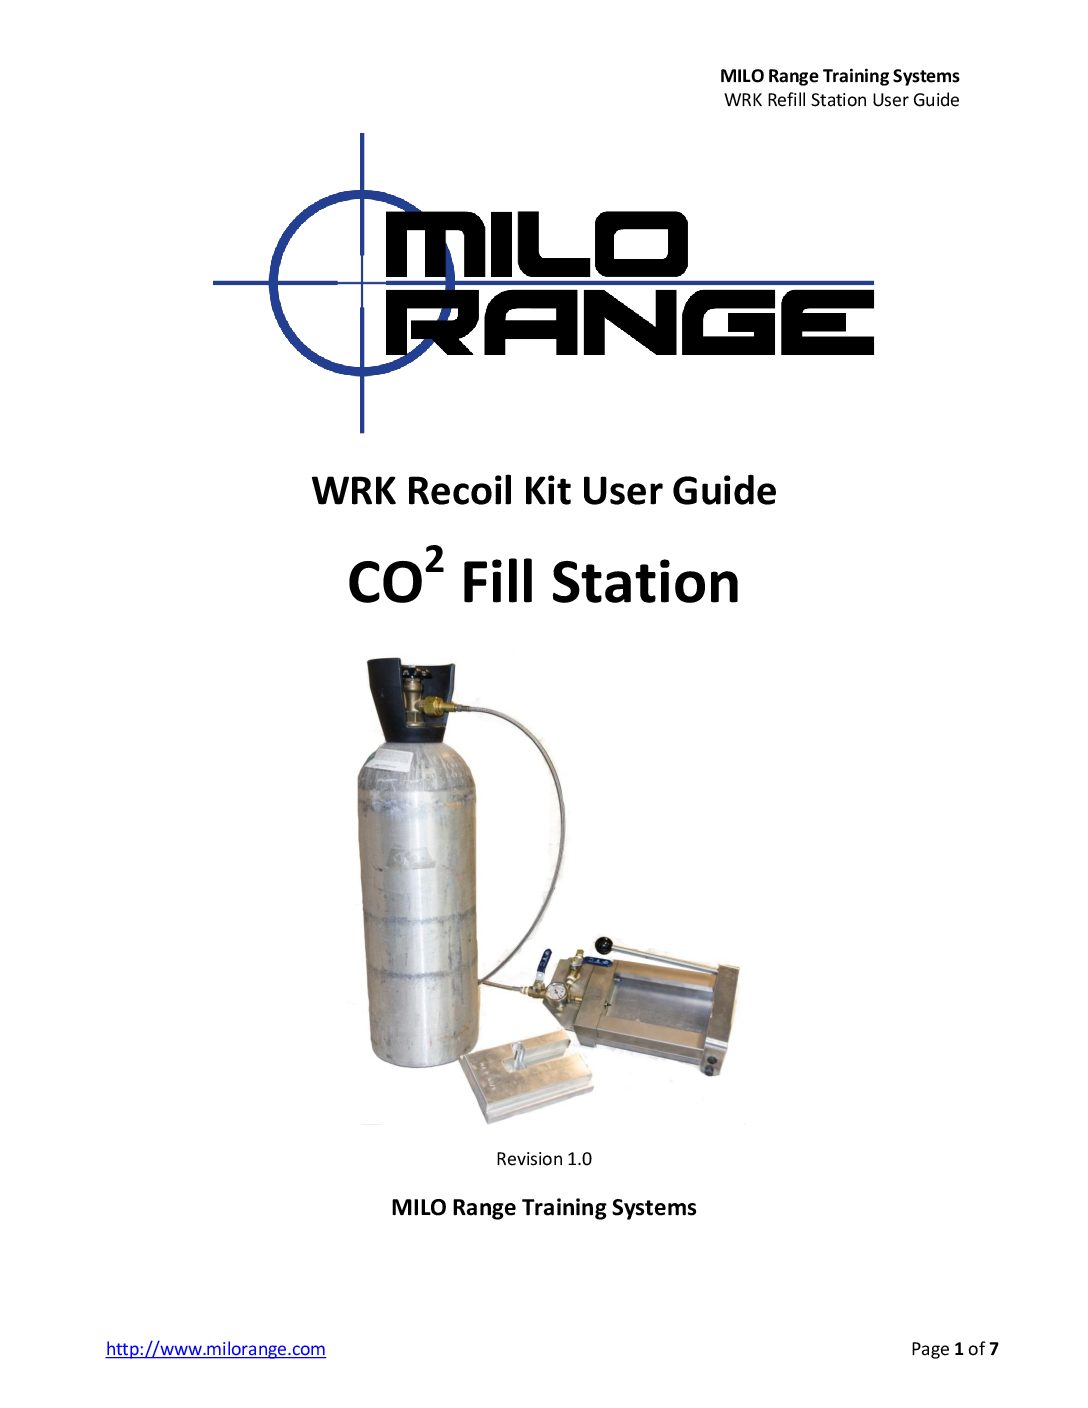 MILO Range Training Systems CO2 WRK Recoil Kit Refill Station User Guide v1